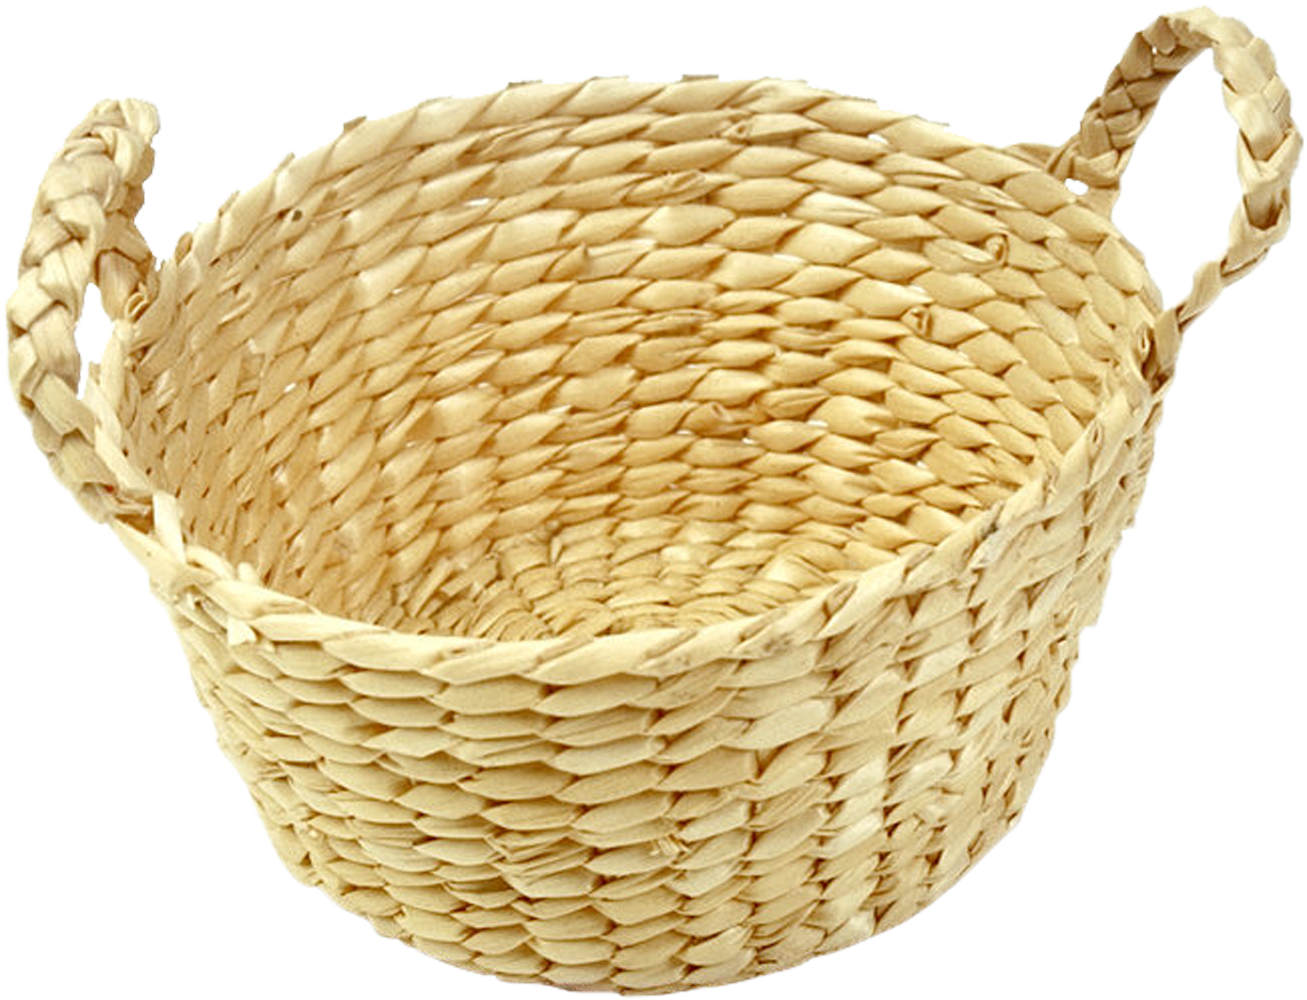 Basket Wicker Bamboe Rattan - Basket png download - 1307*1000 - Free ...